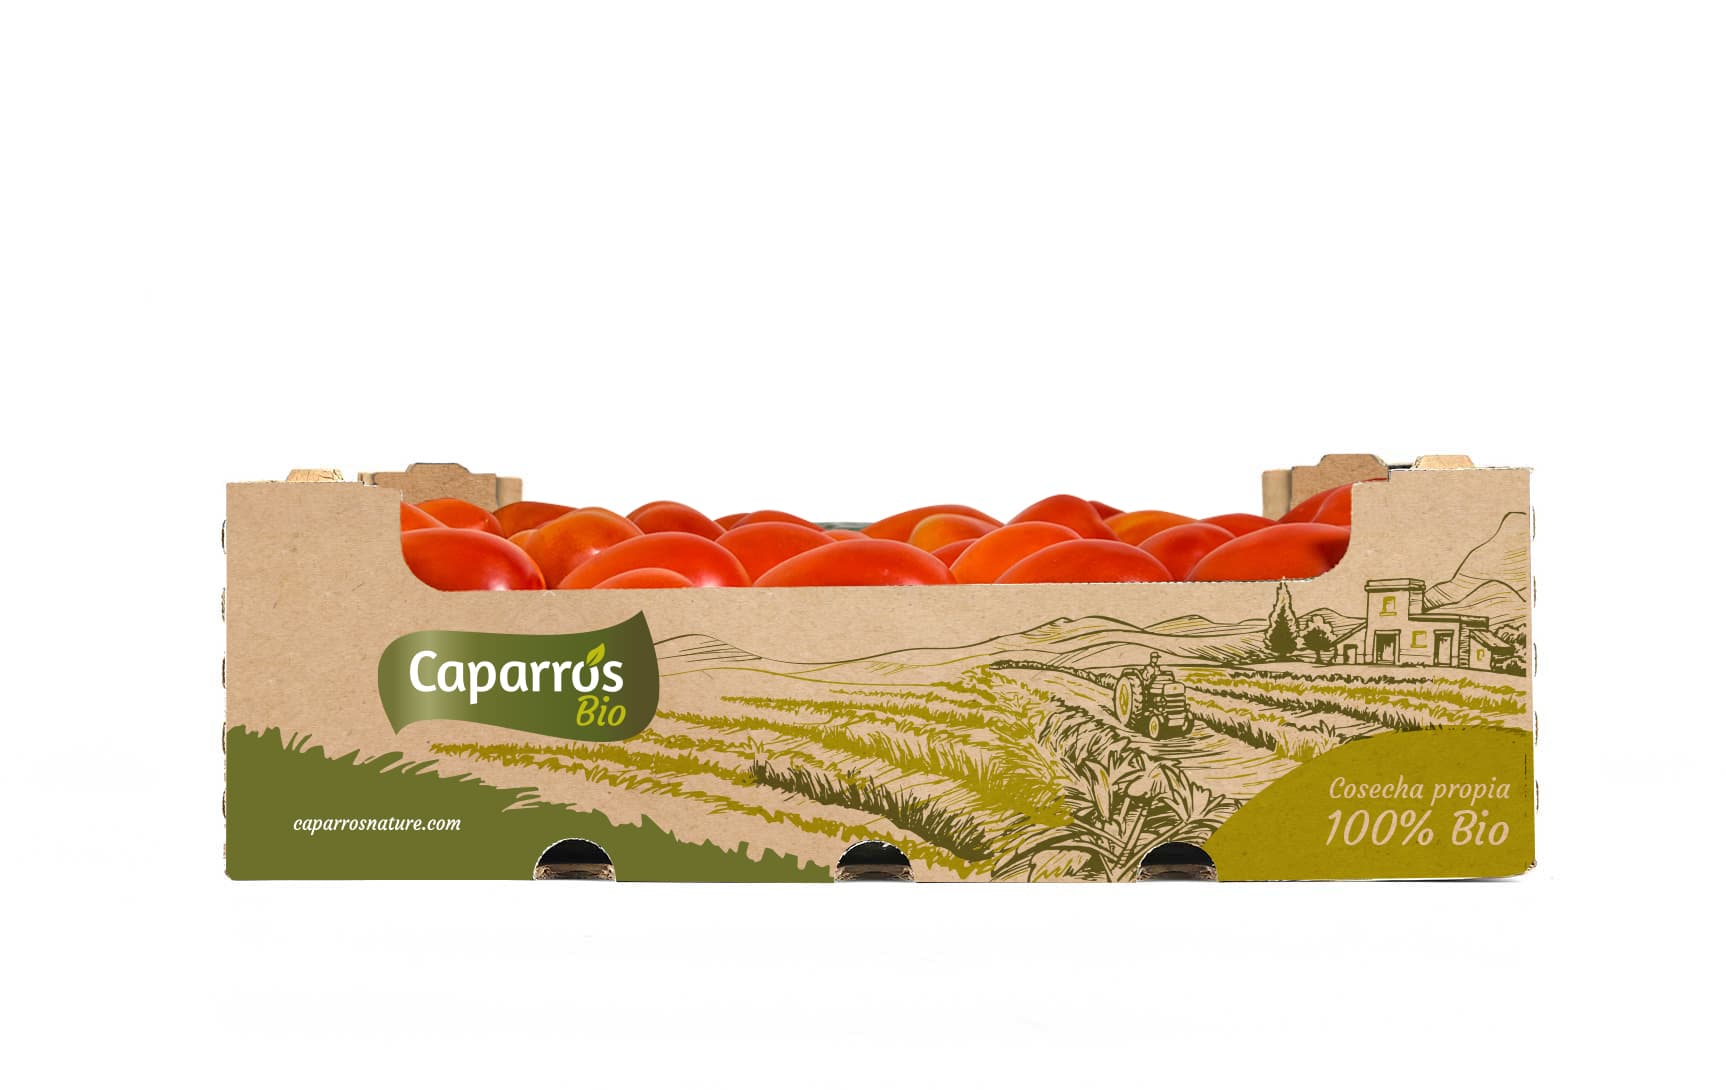 Packaging tomate pera bio - Caparrós